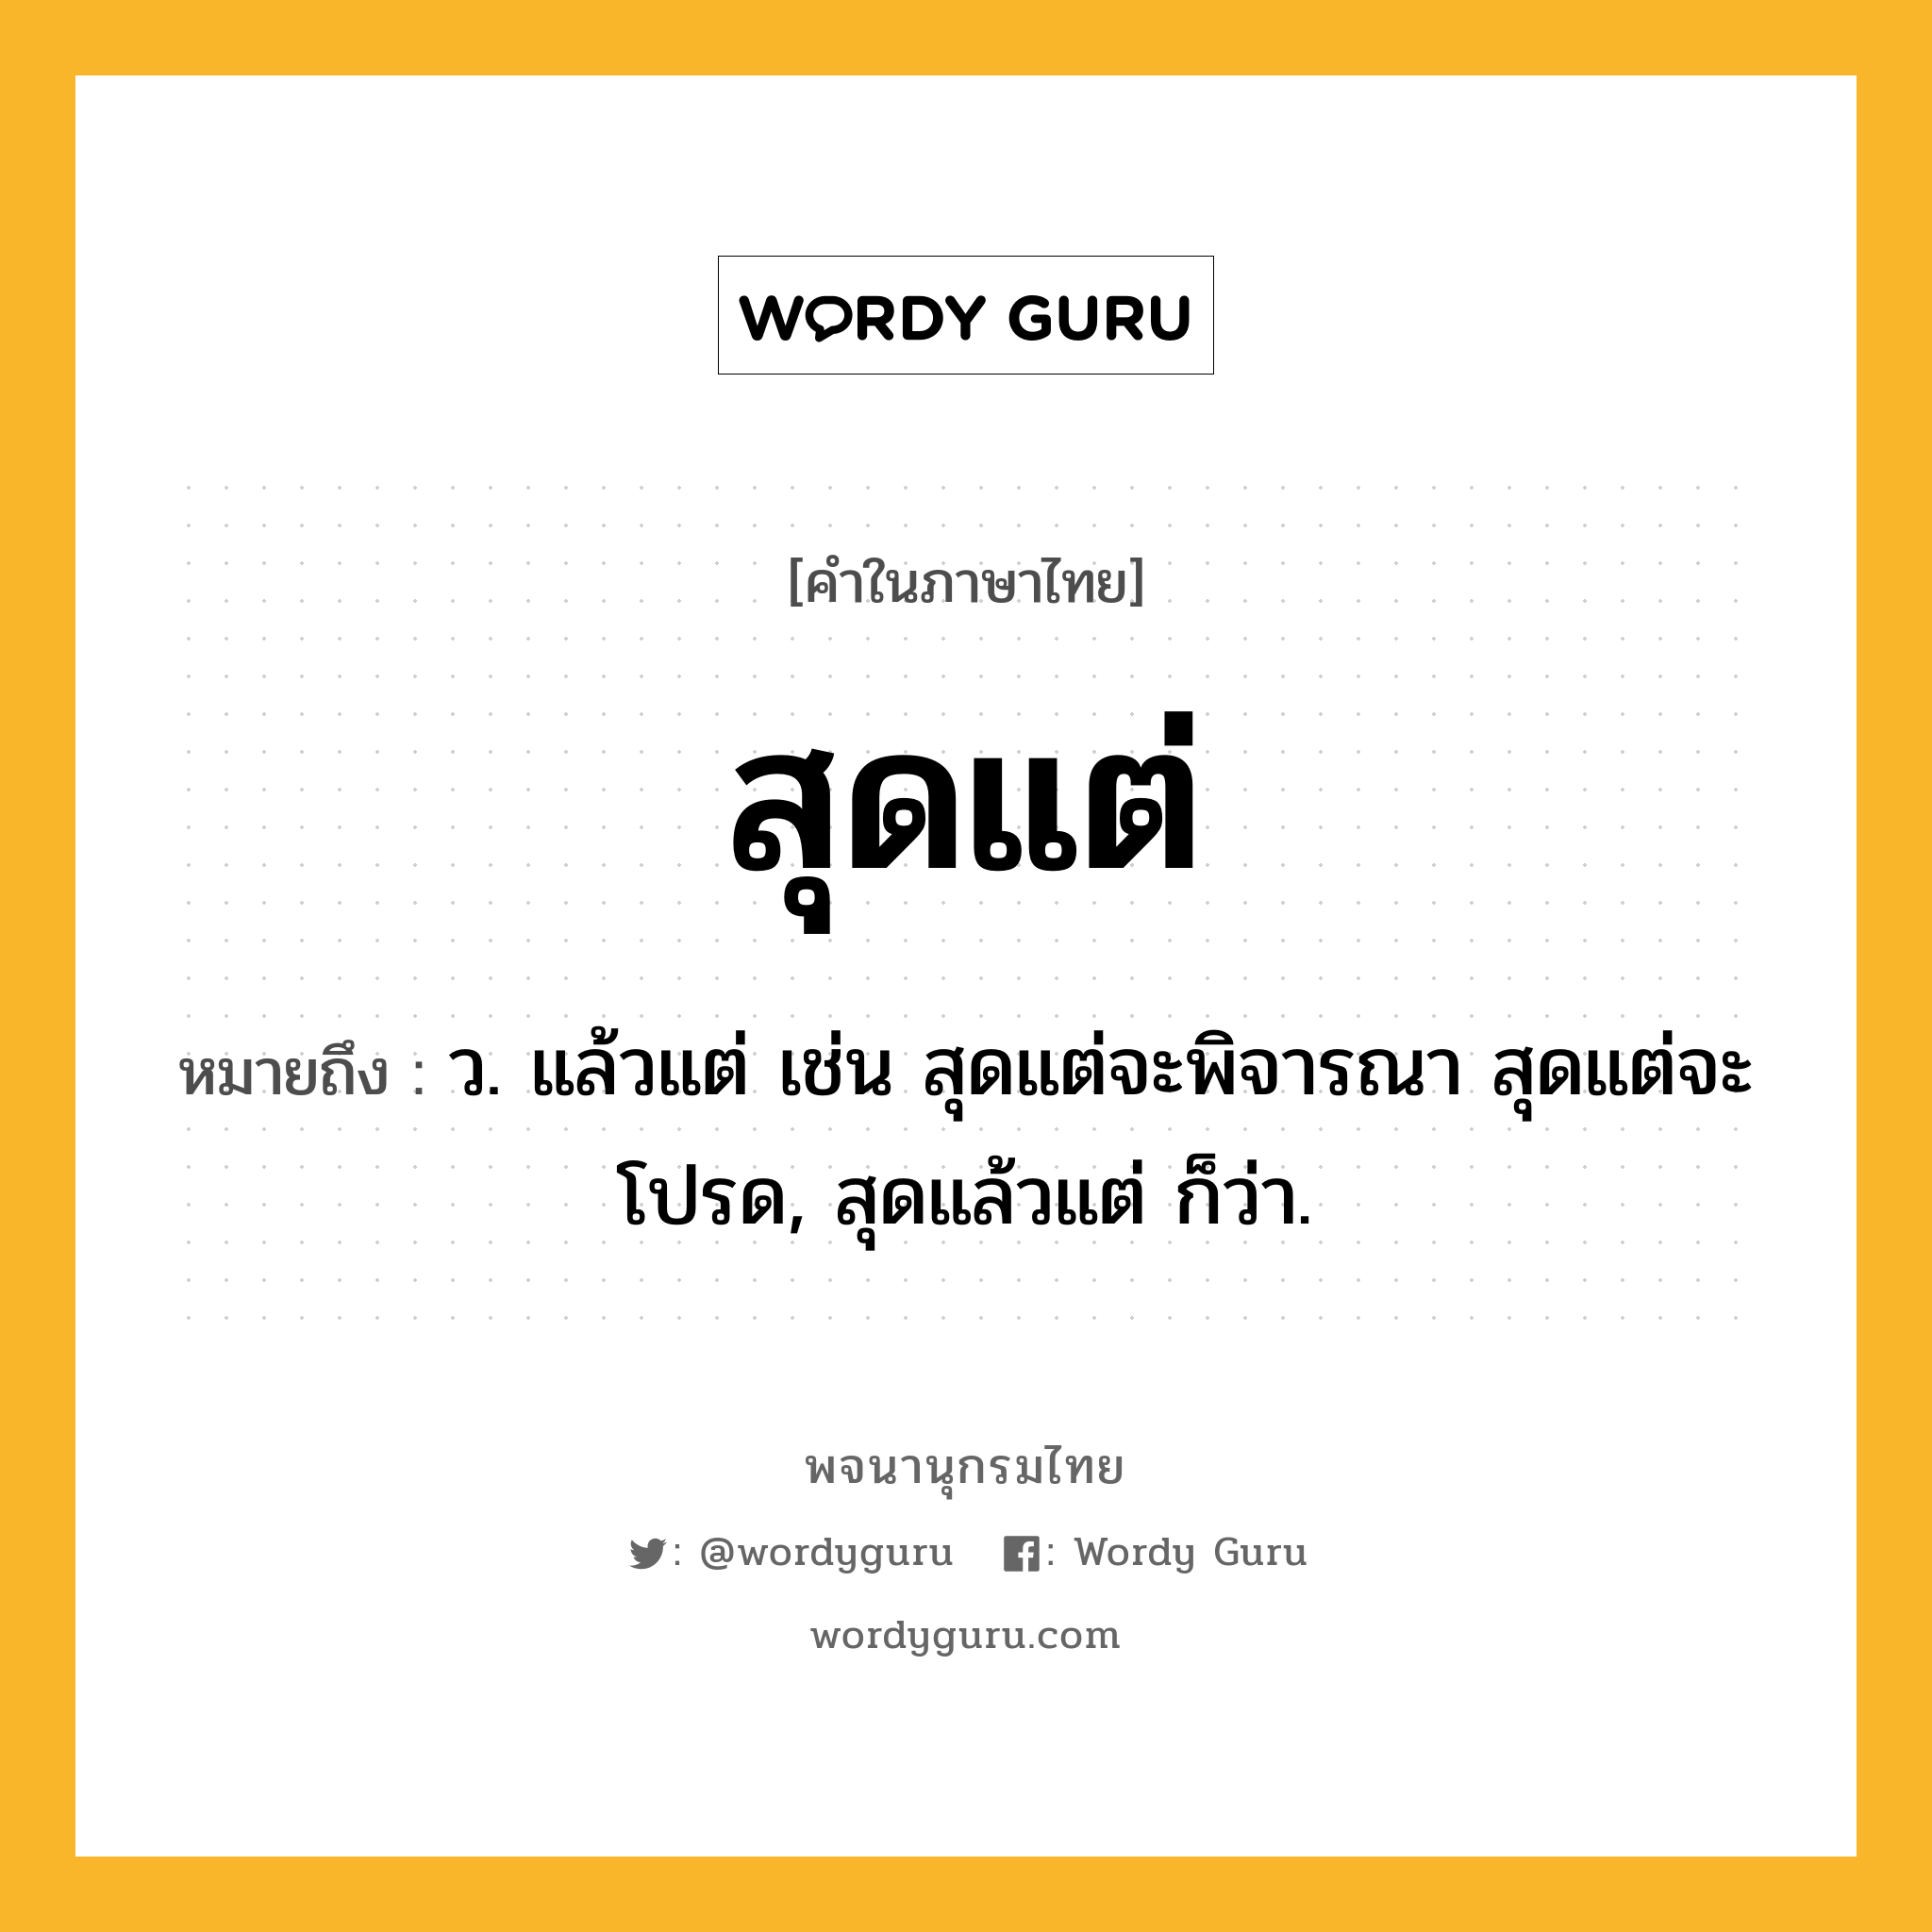 สุดแต่ ความหมาย หมายถึงอะไร?, คำในภาษาไทย สุดแต่ หมายถึง ว. แล้วแต่ เช่น สุดแต่จะพิจารณา สุดแต่จะโปรด, สุดแล้วแต่ ก็ว่า.